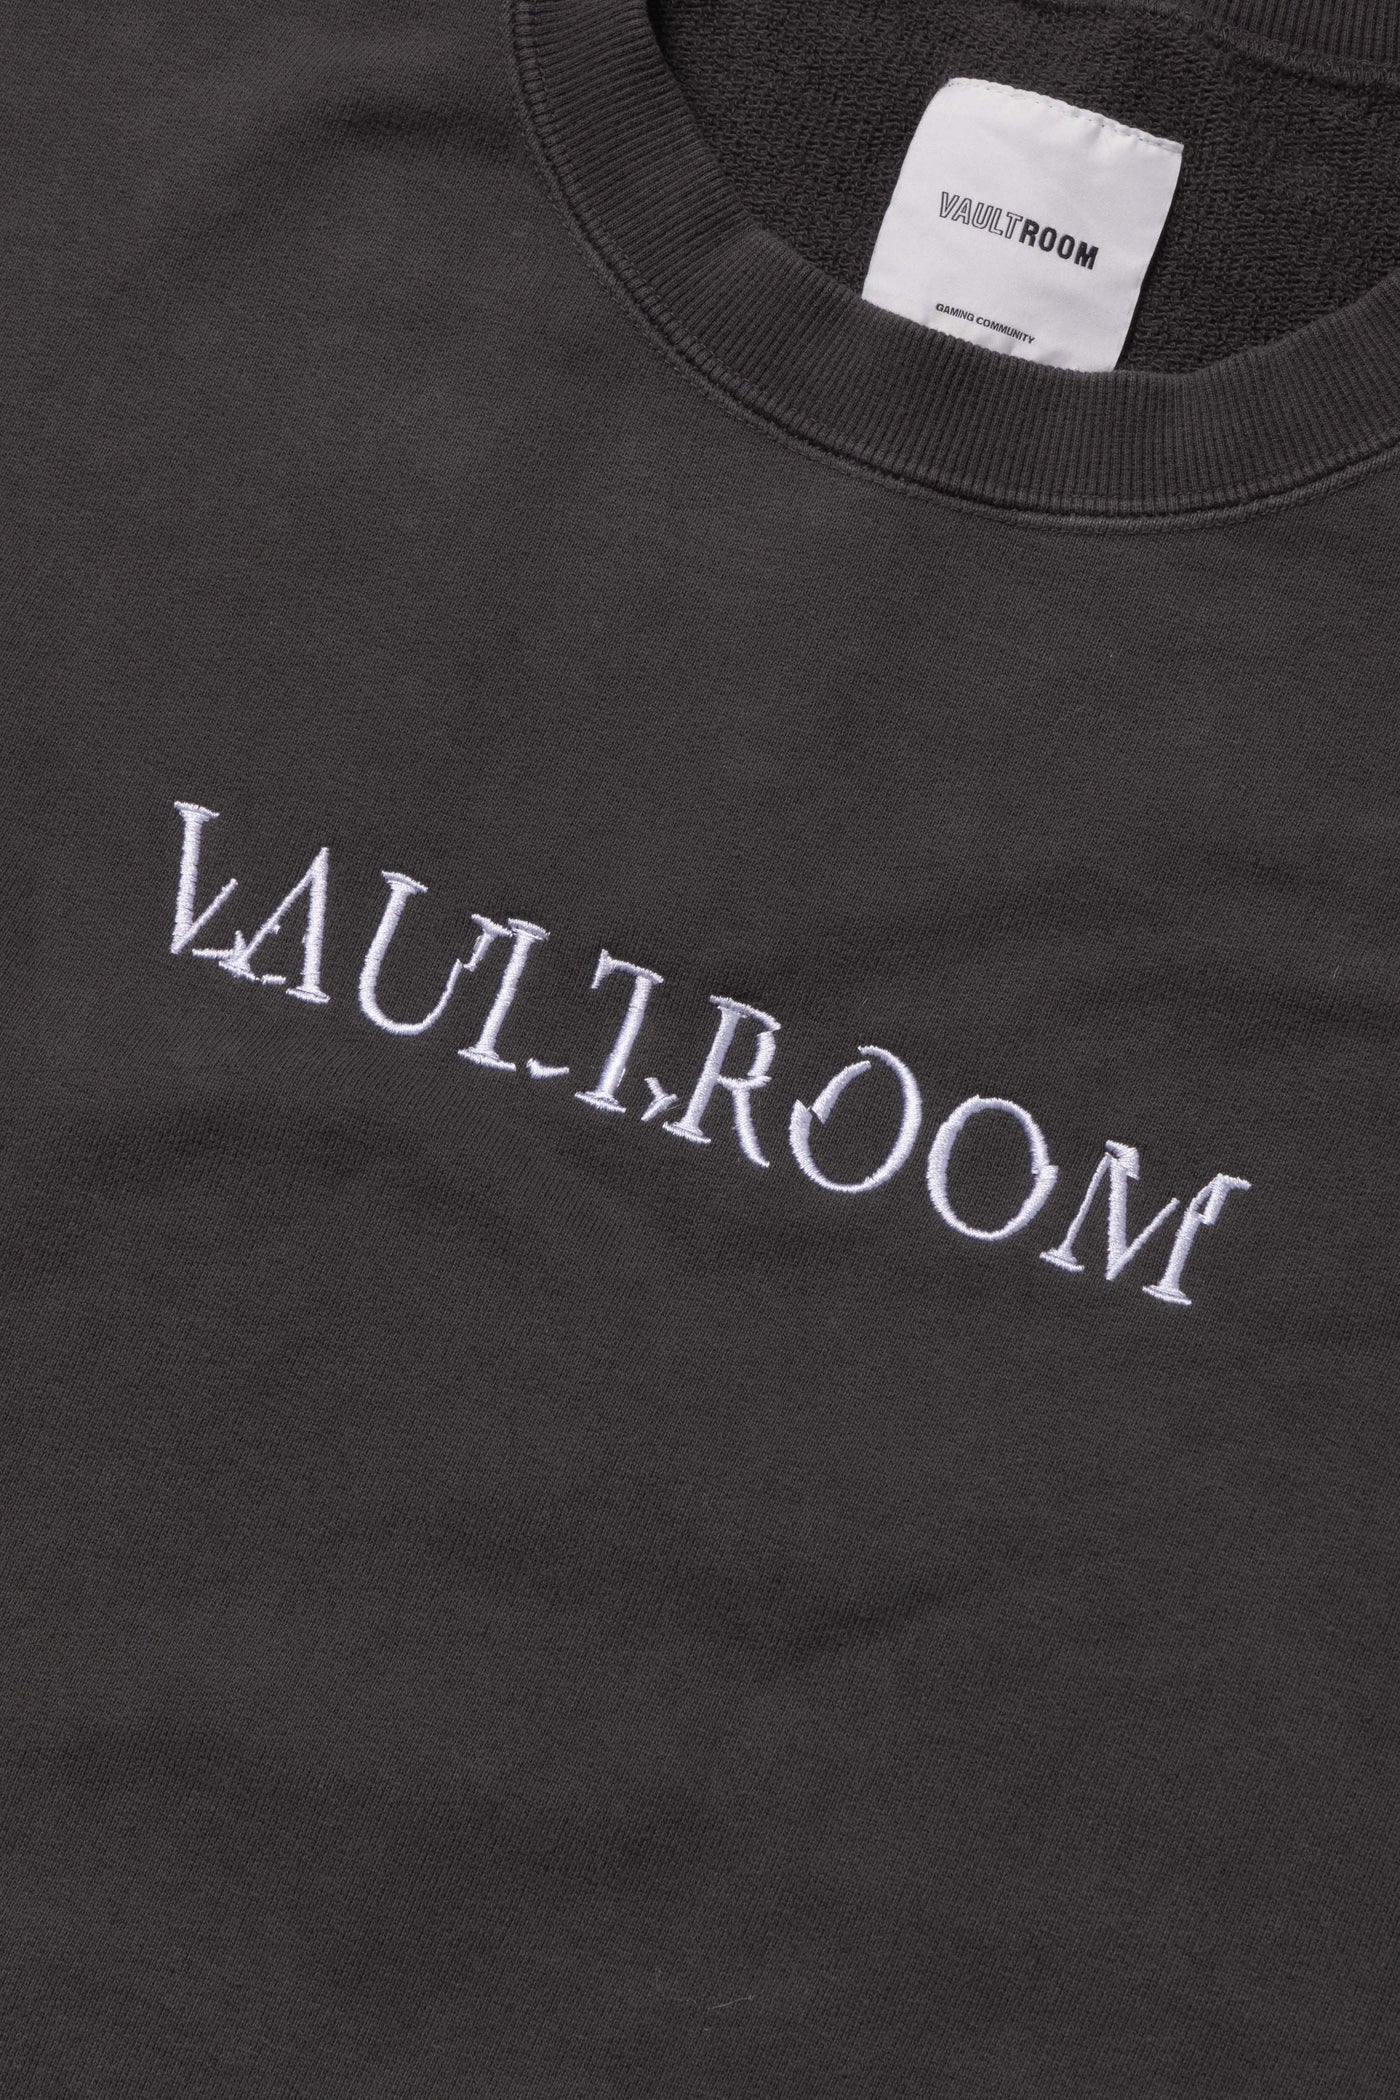 VAULTROOM CUTOFF VEST Lサイズ-